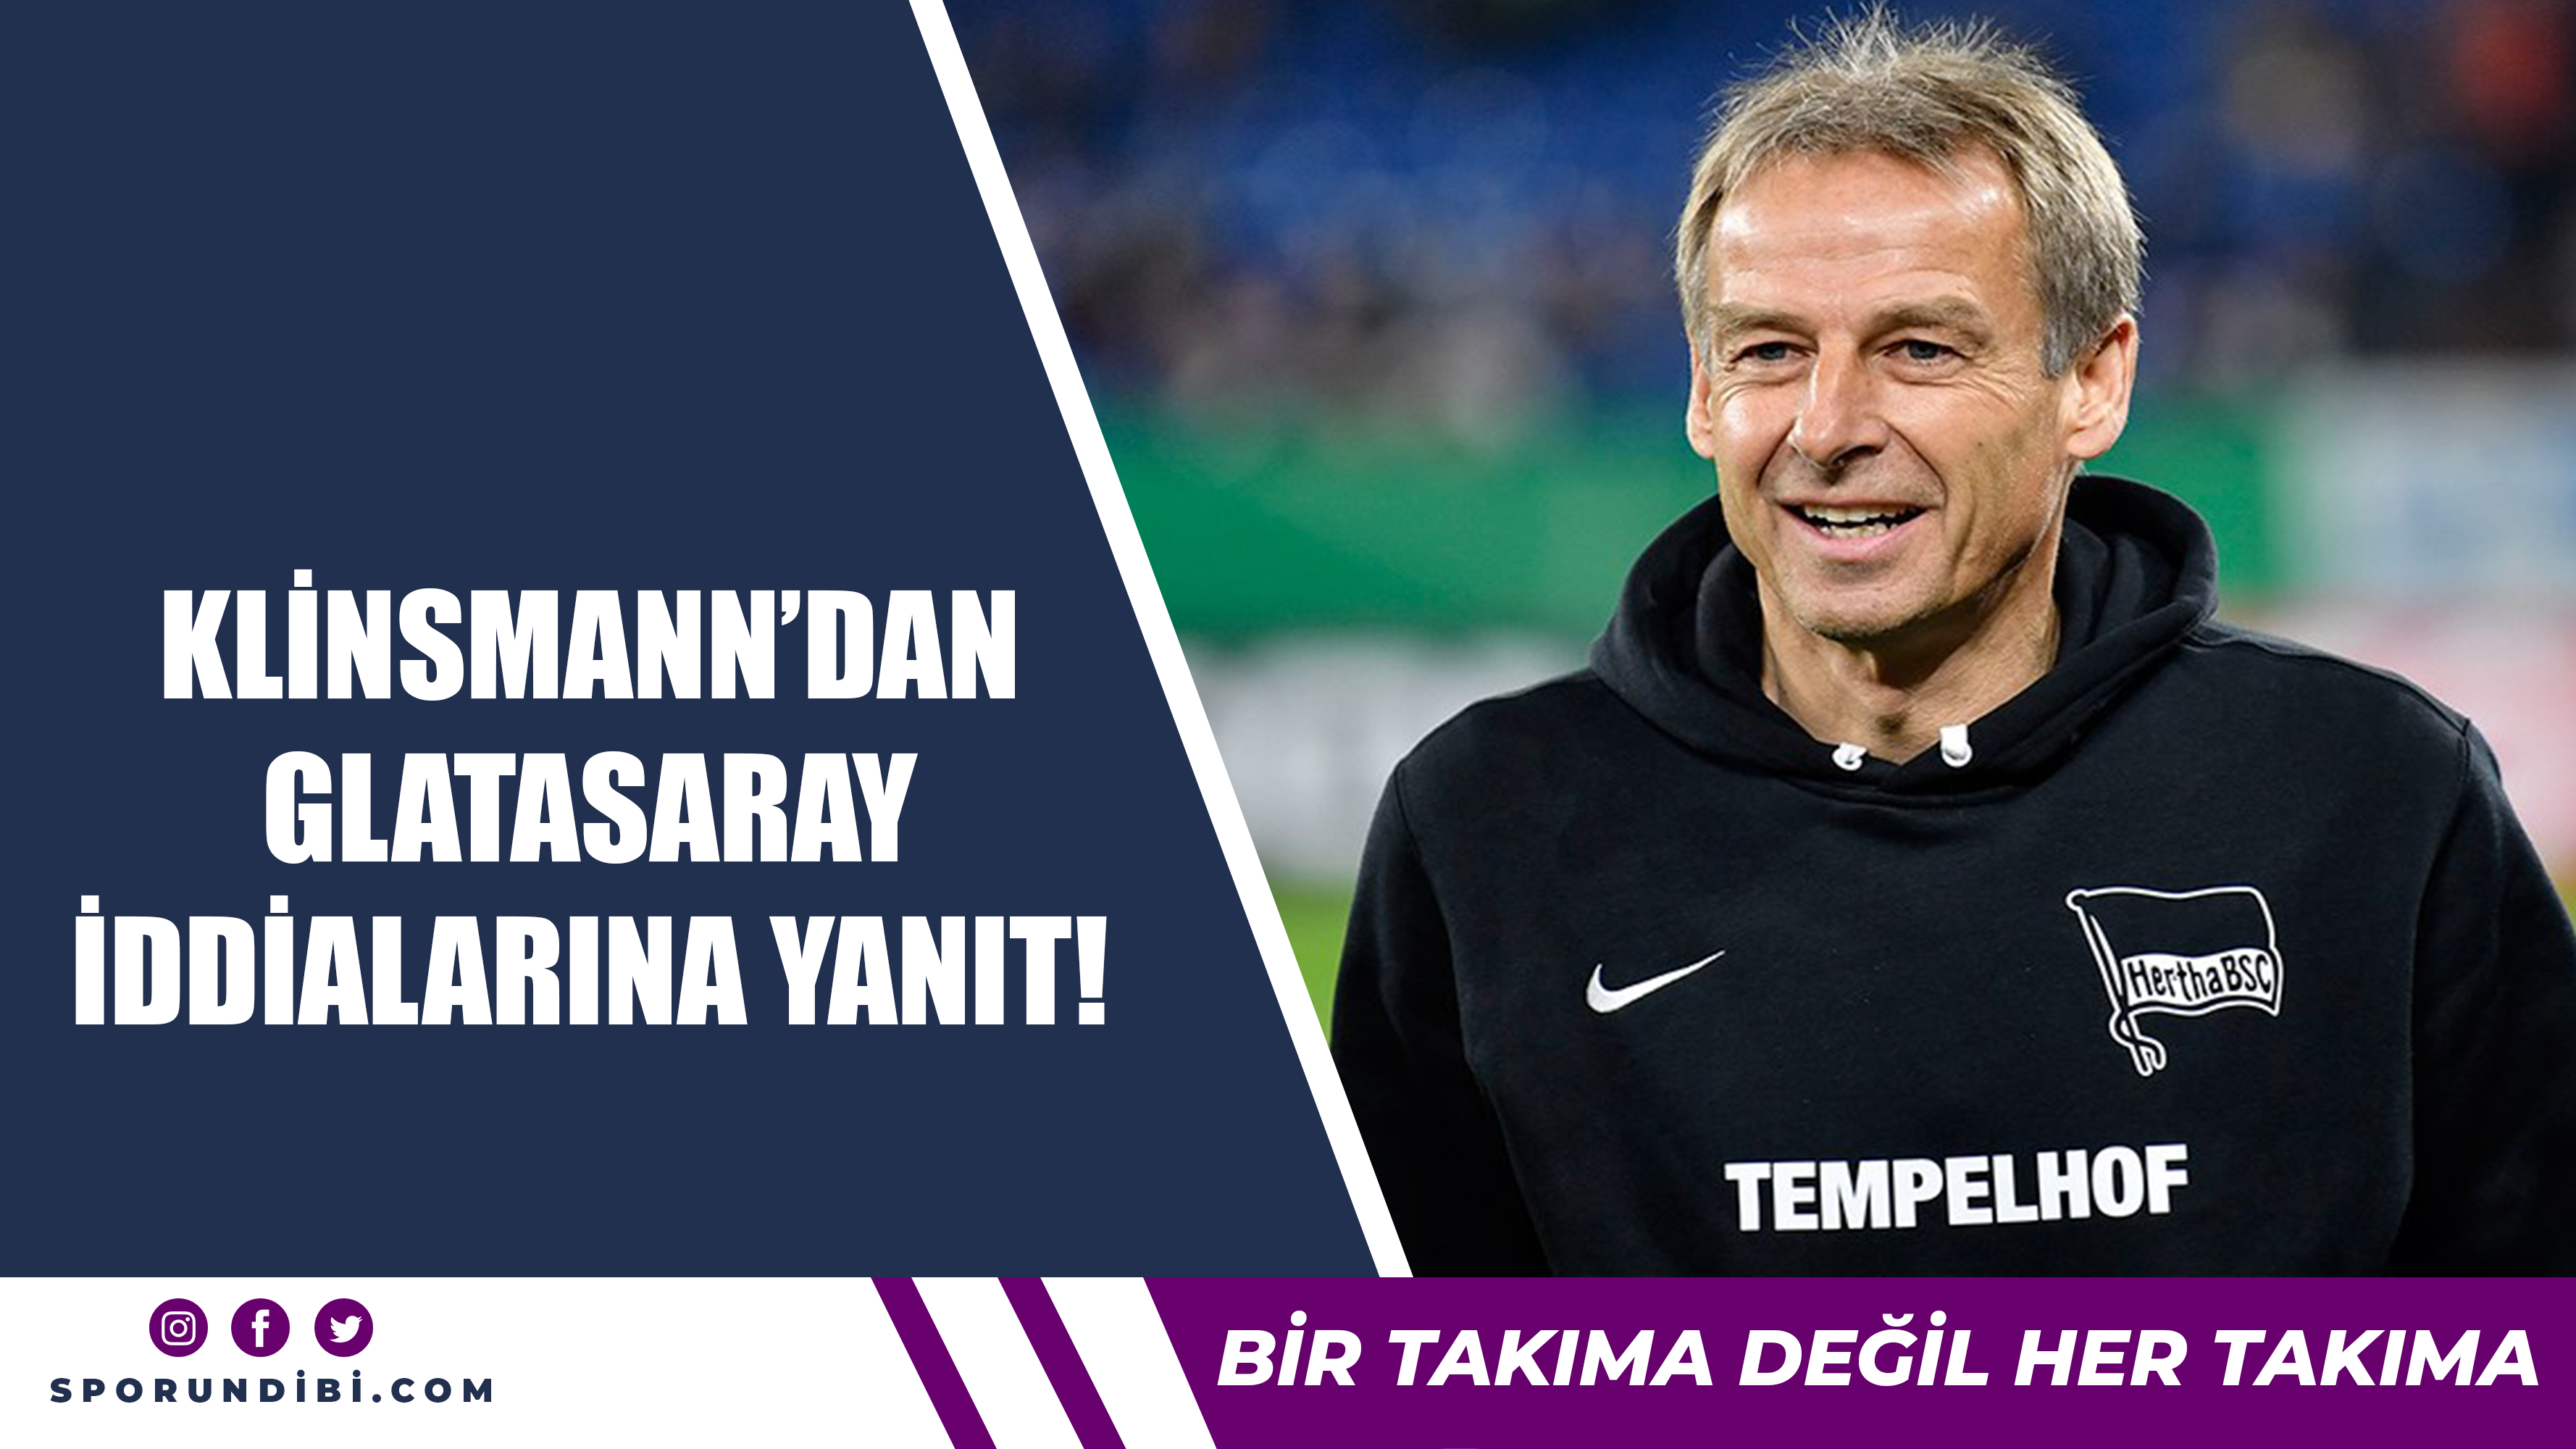 Klinsmann'dan Galatasaray iddialarına yanıt!